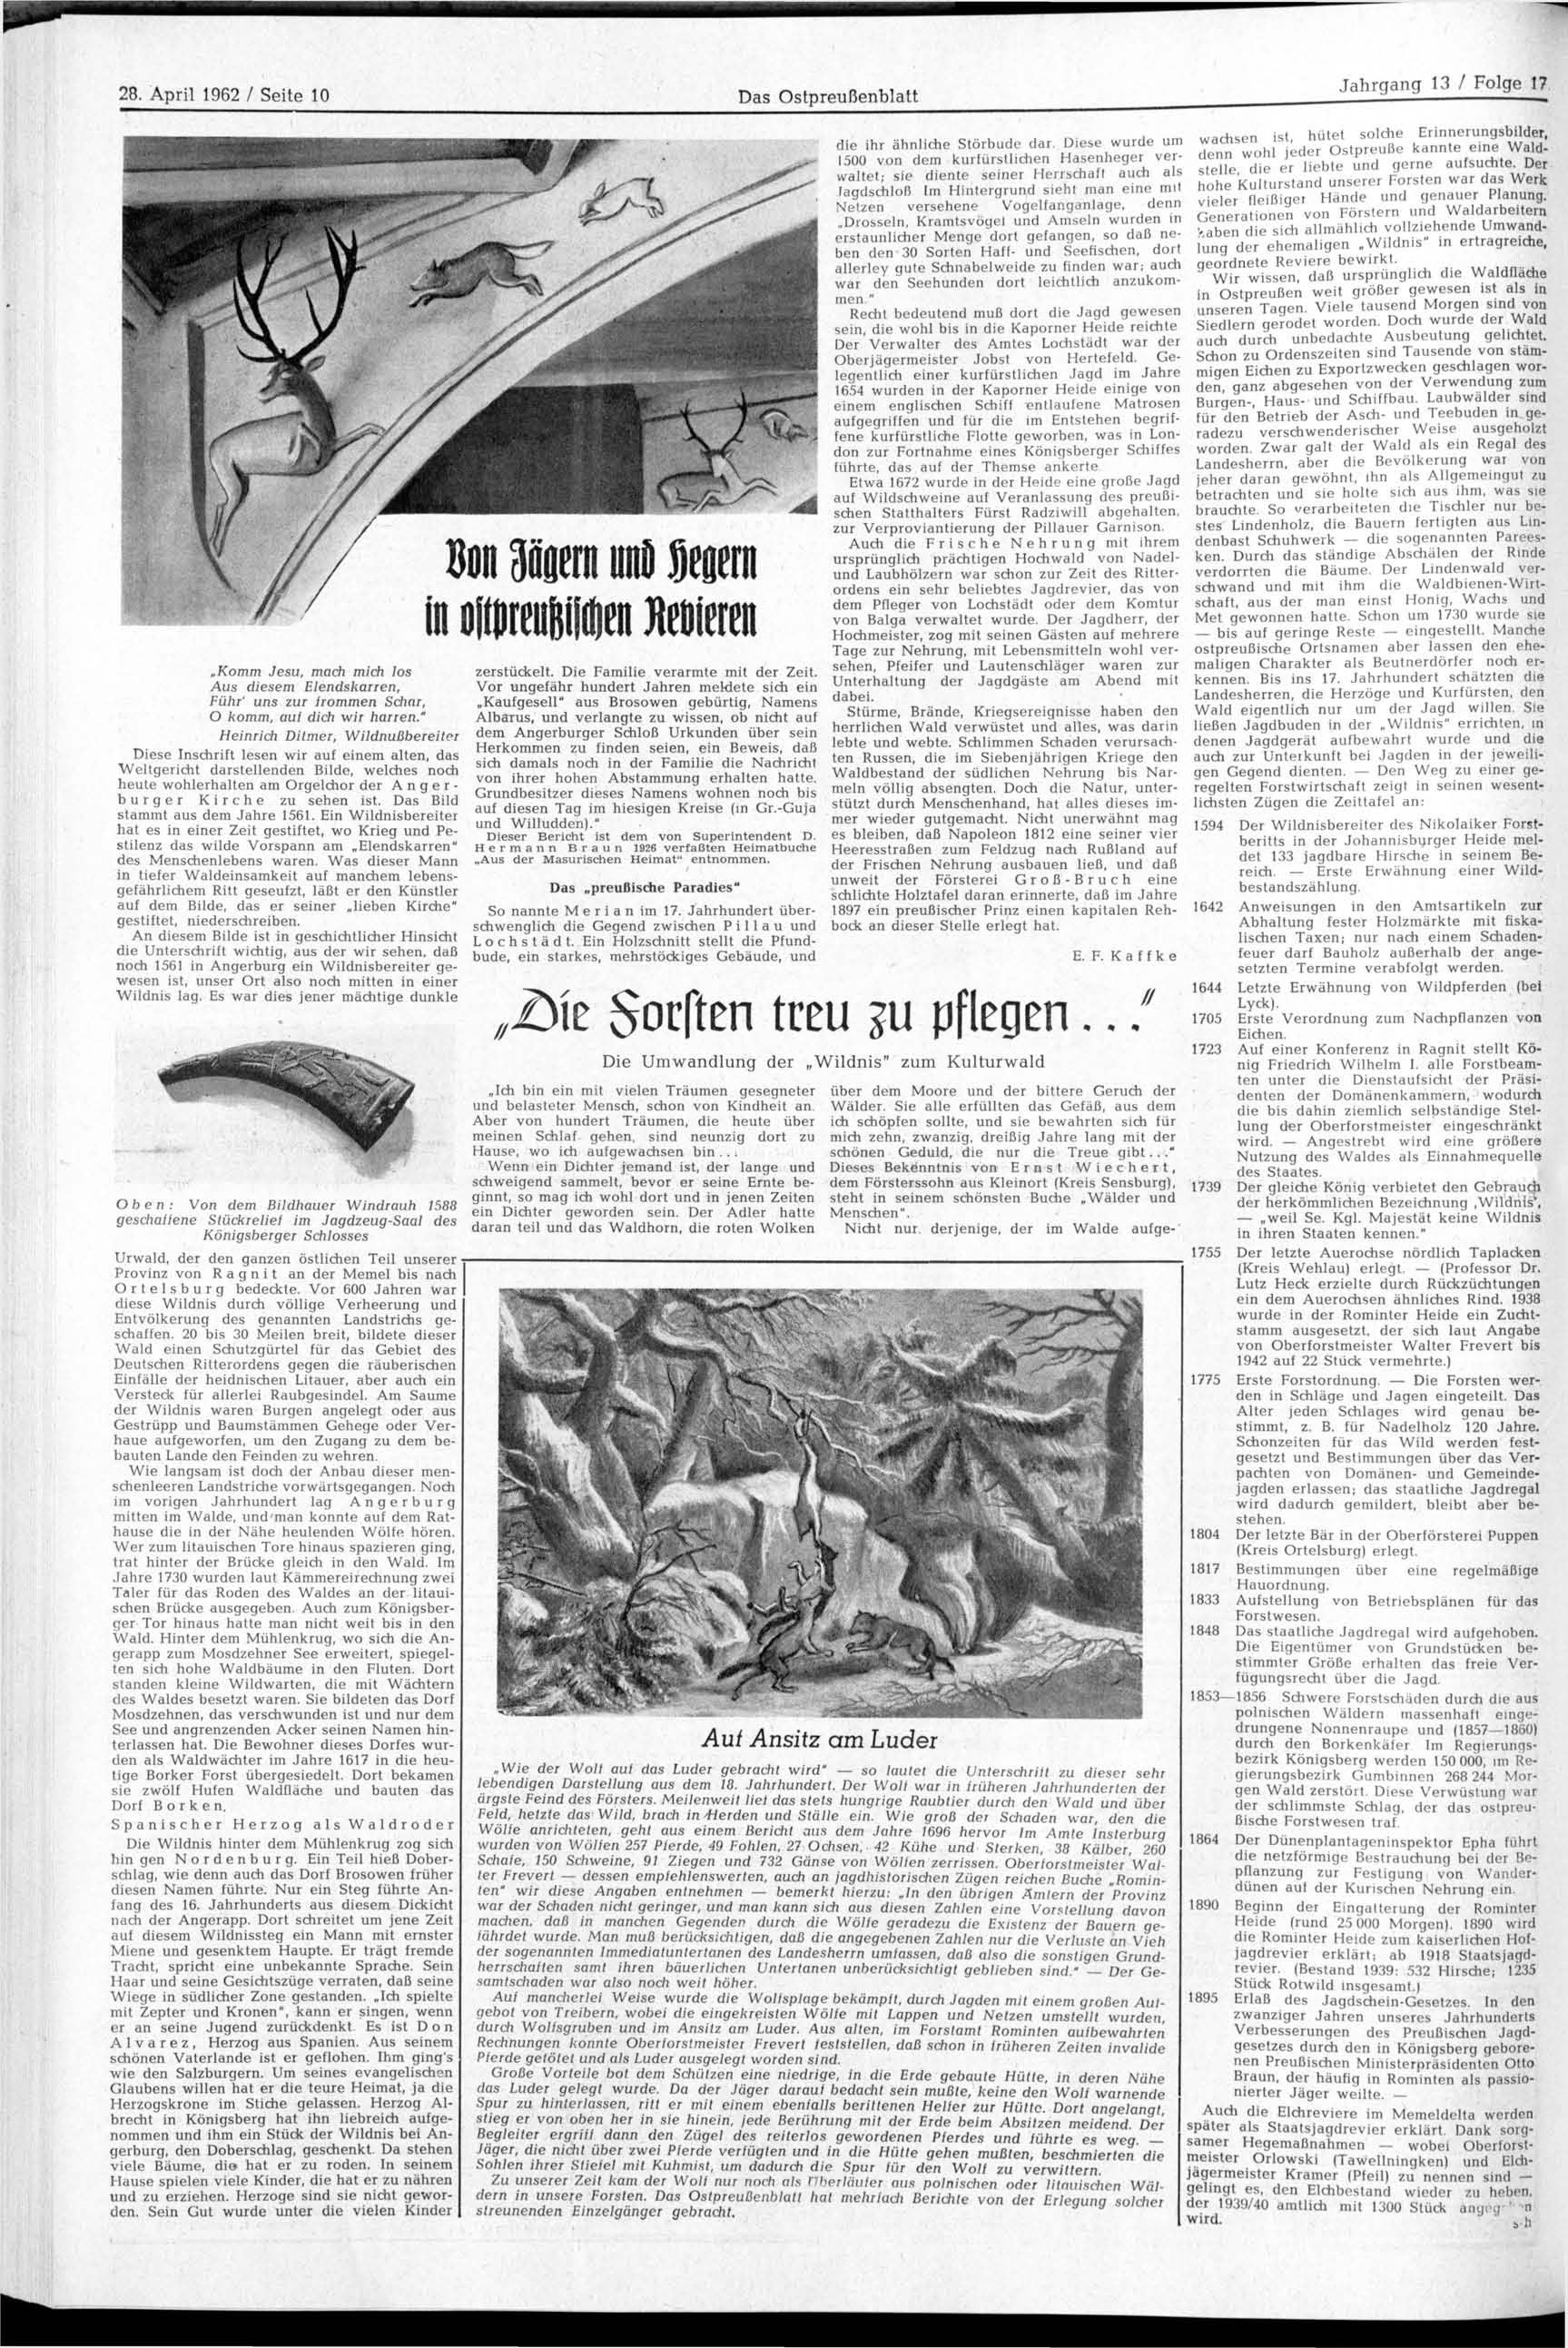 28. April 1962 / Seite 10 Das Ostpreußenblatt Komm Jesu, mach mich los Aus diesem Elendskarren, Führ' uns zur frommen Schar, O komm, auf dich wir harren.